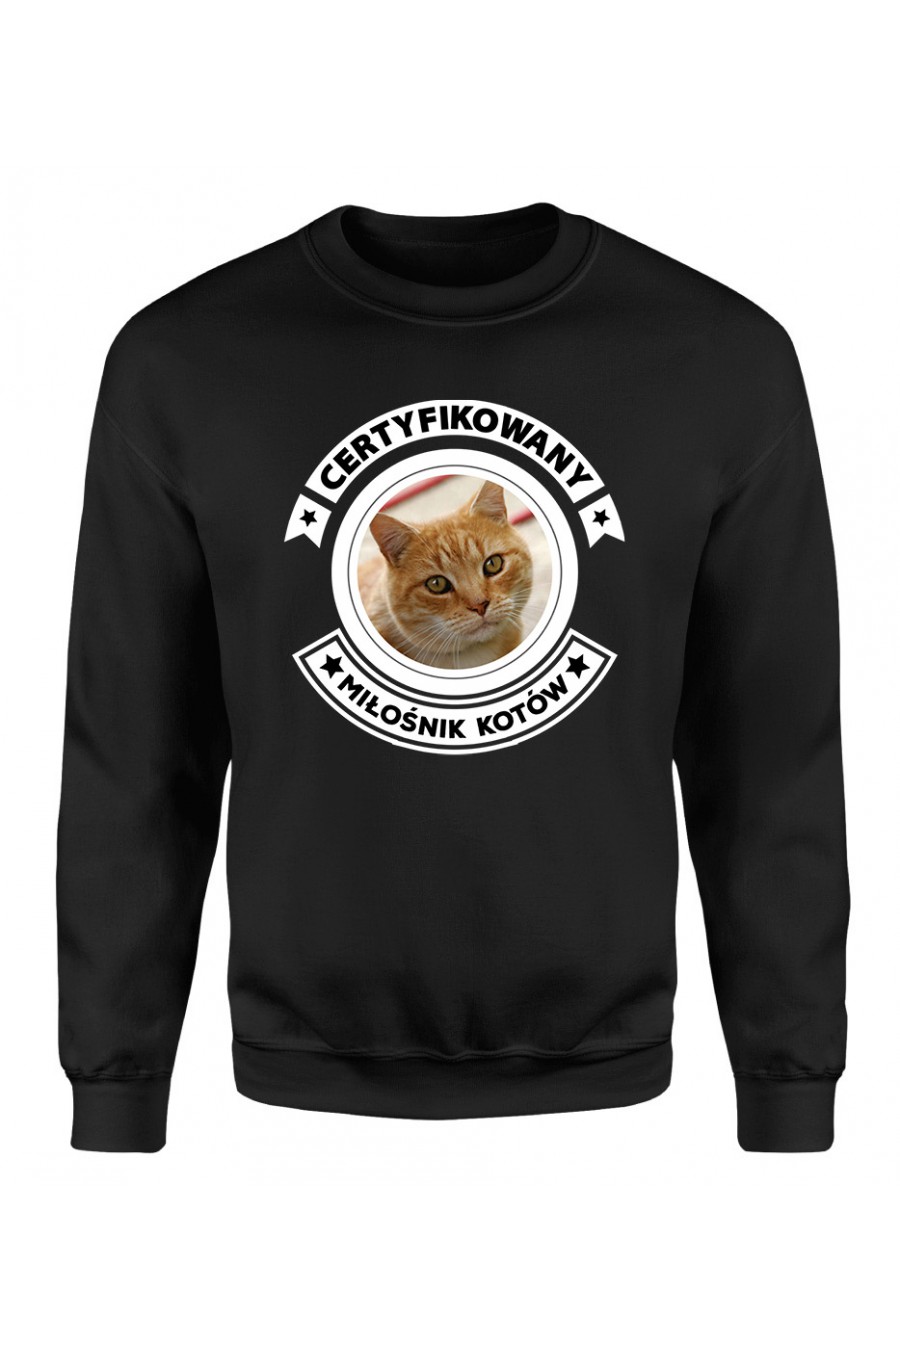 Bluza Klasyczna Męska Certyfikowany Miłośnik Kotów